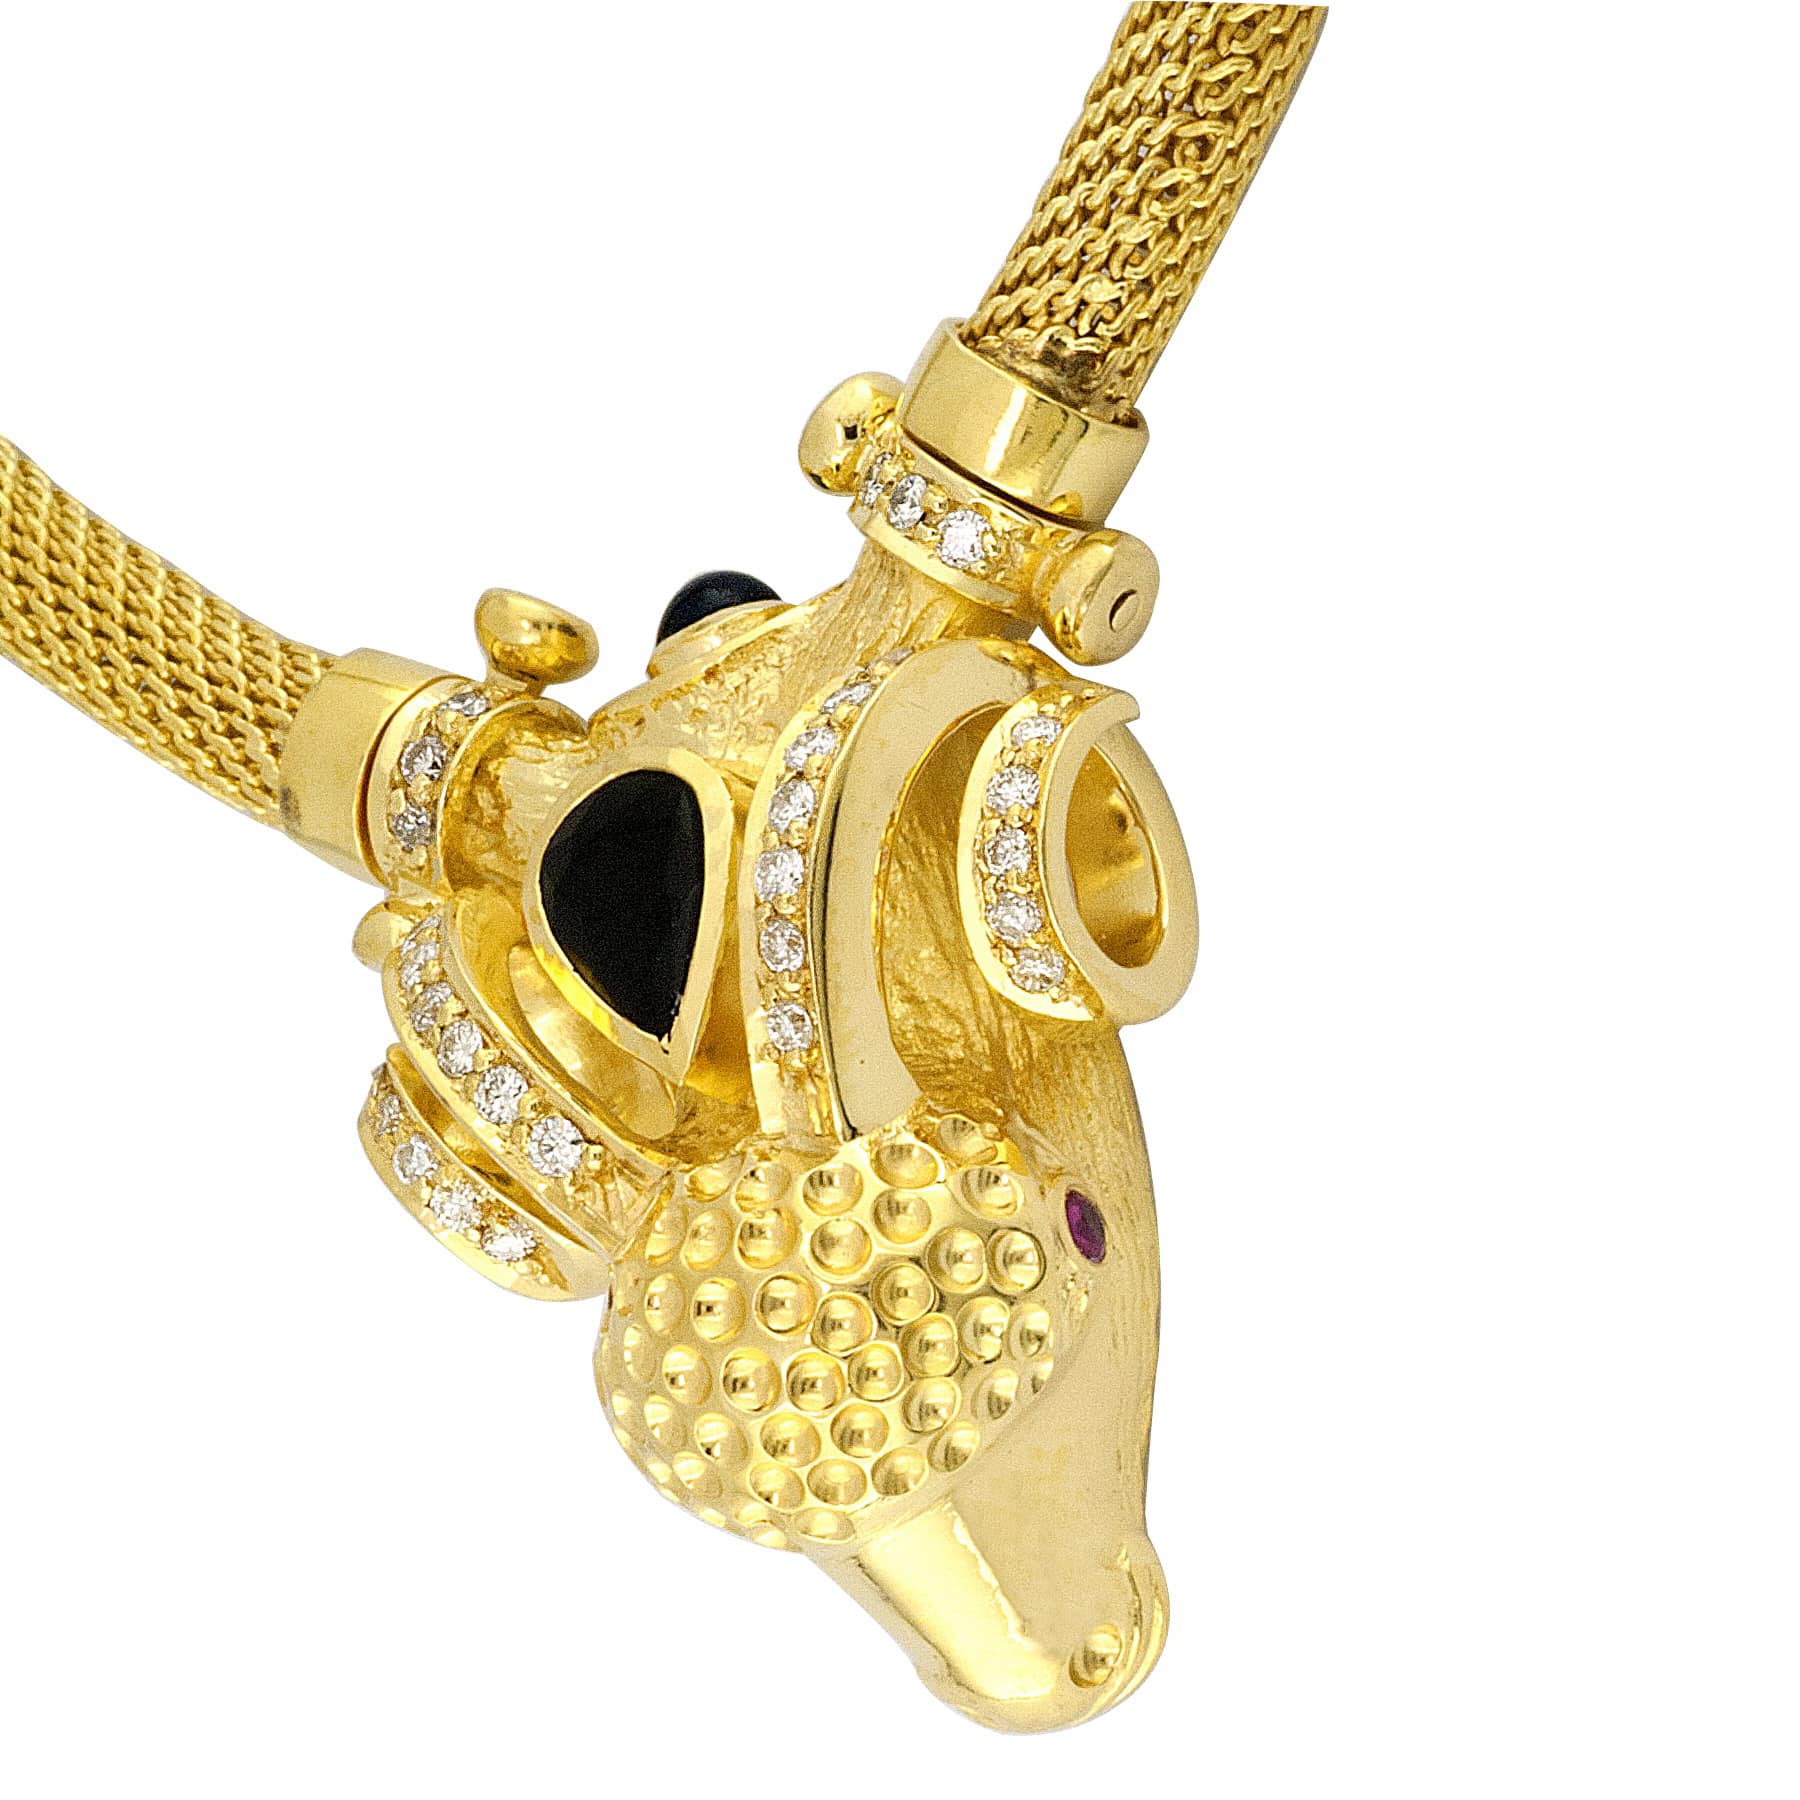 διαμάντια χρυσά κοσμήματα διαμαντια χρυσα κοσμηματα butterfly 18k 750/1000 jewellery jewerly gold diamond animal necklace κριάρι ram